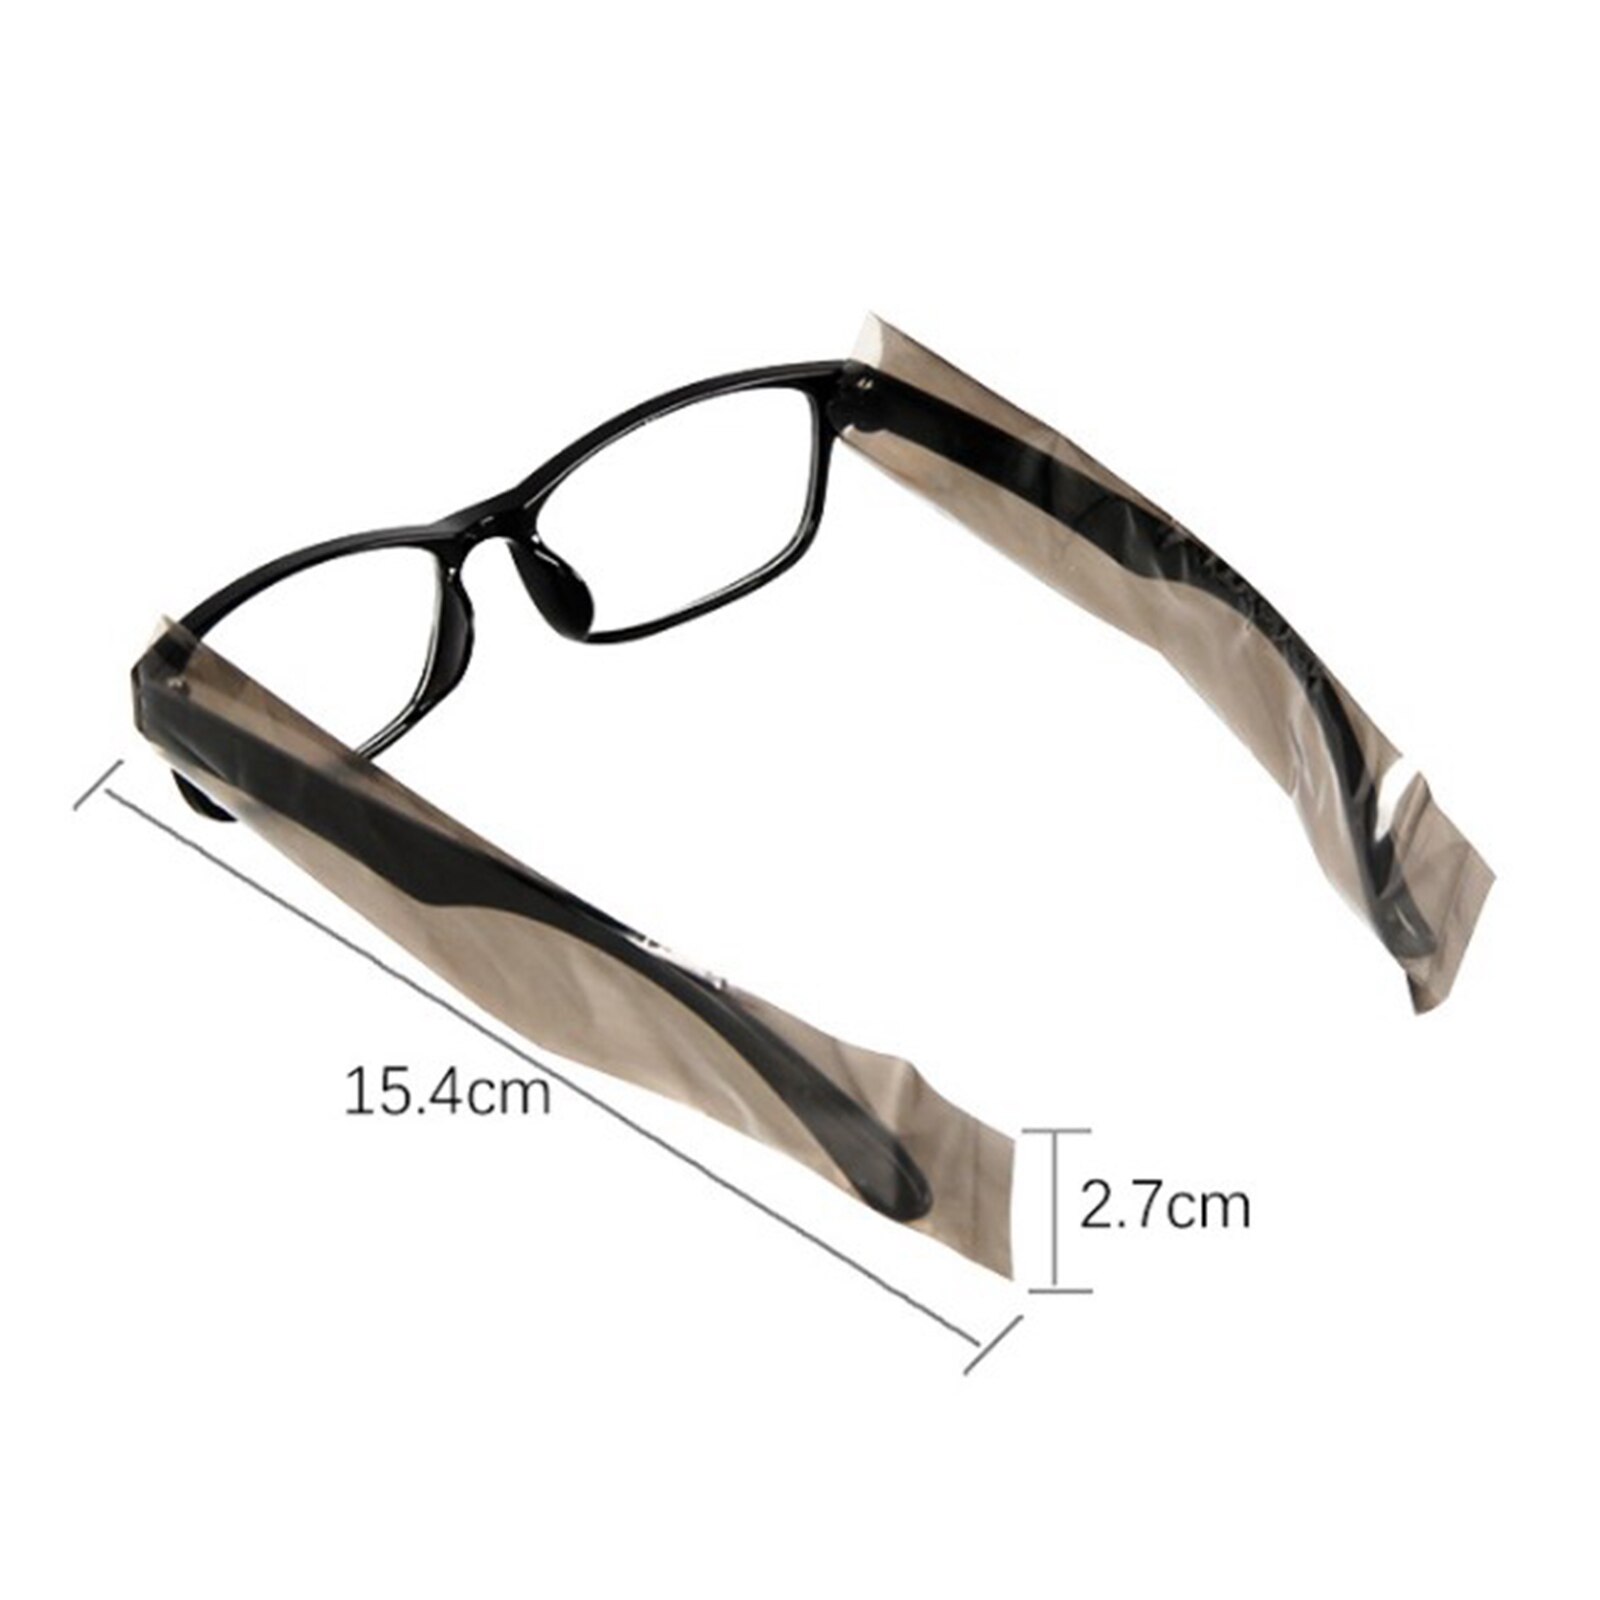 200 Stuks Wegwerp Lenzenvloeistof Been Sleeves Cover Kappers Diy Kapper Haarkleuring Styling Tool Voor Brillen Bril Protector